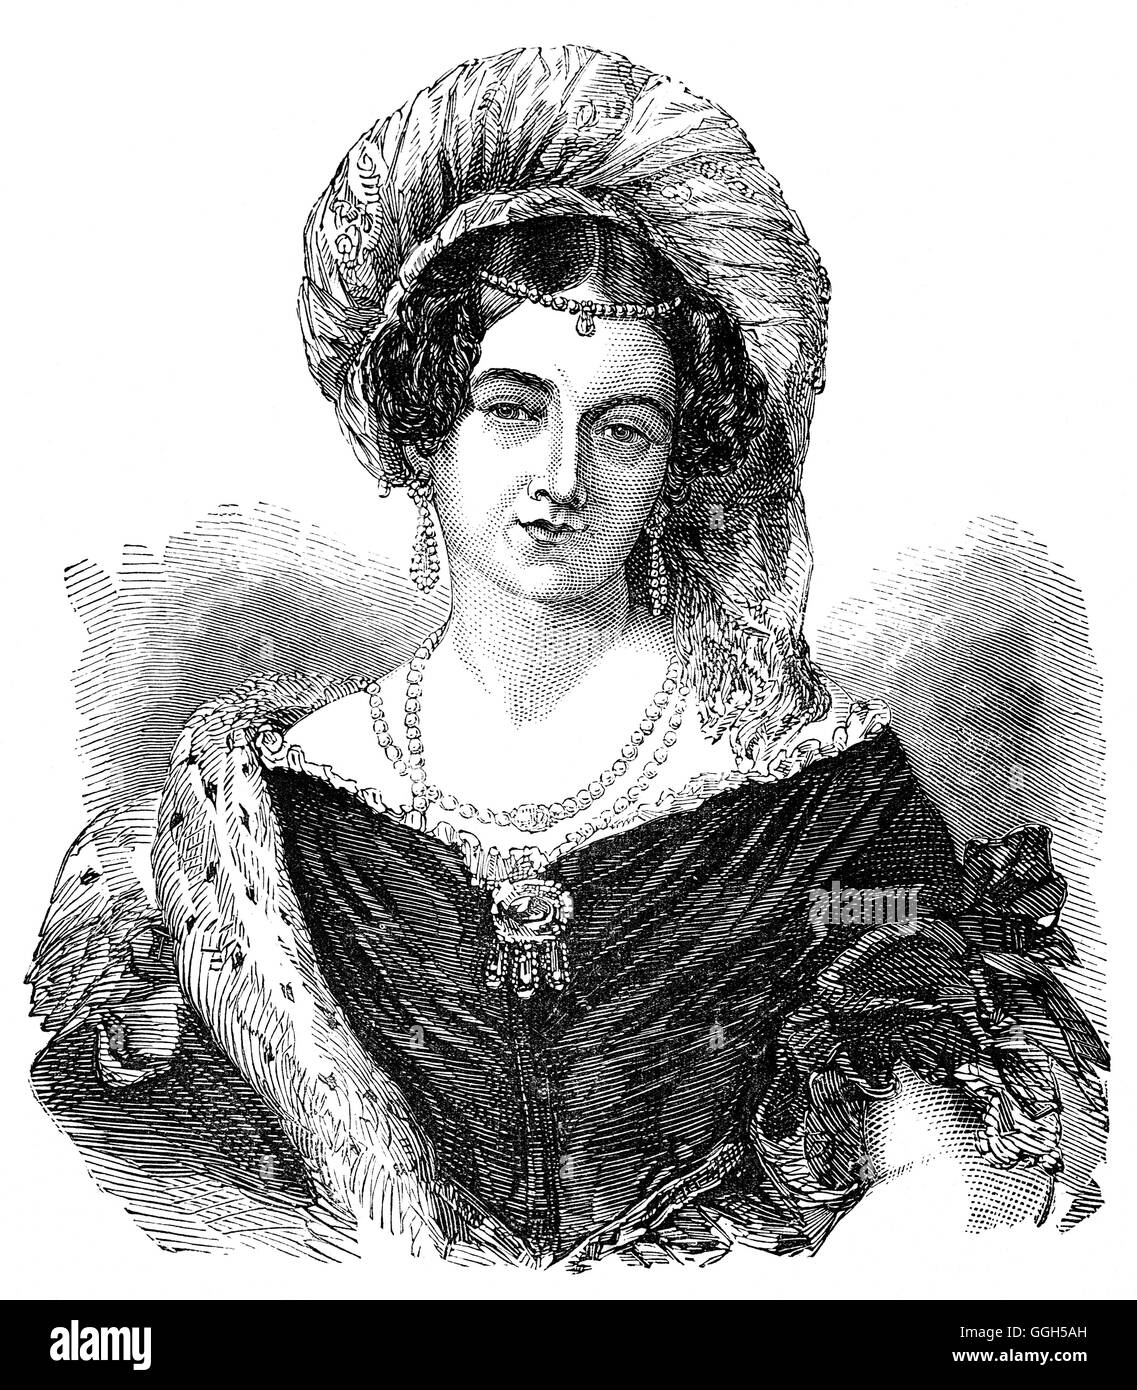 La Principessa Victoria di Sassonia Coburgo - Gotha-Saalfeld (1786 - 1861) era una principessa tedesca che ha sposato Prince Edward, Duca di Kent e Strathearn e più tardi ha dato nascita alla futura regina Victoria. Foto Stock